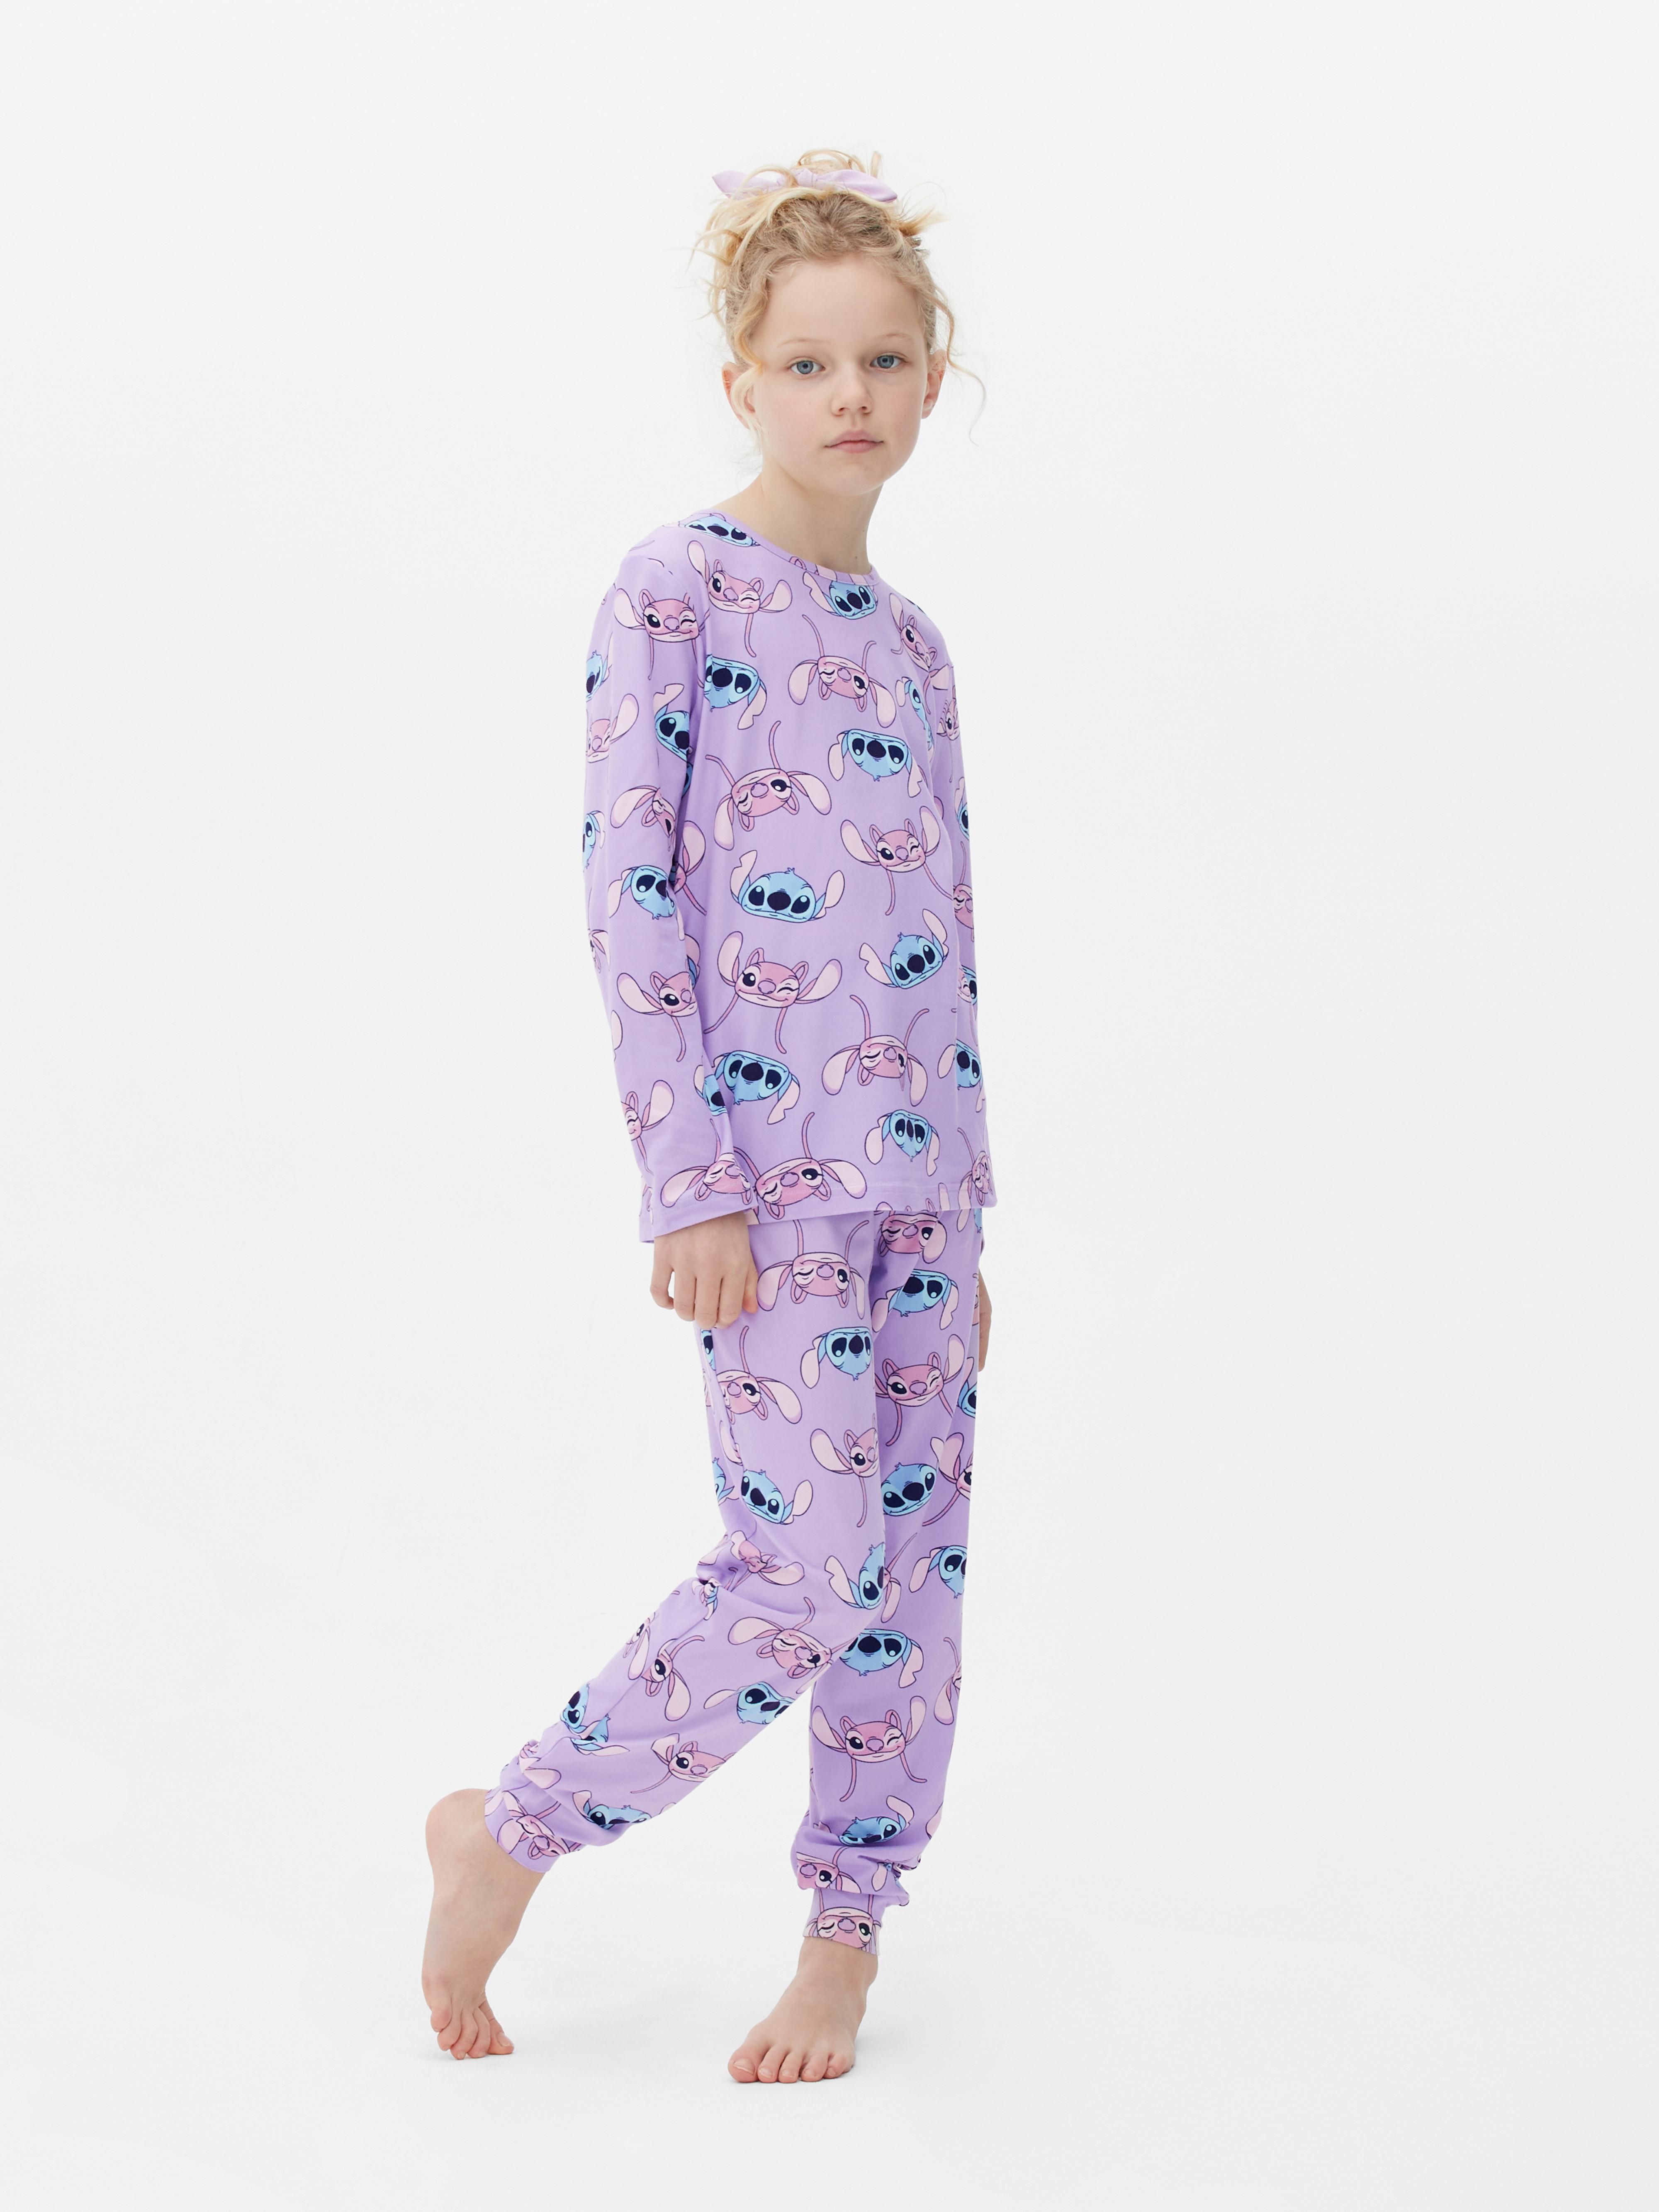 Disney's Lilo and Stitch Pajamas